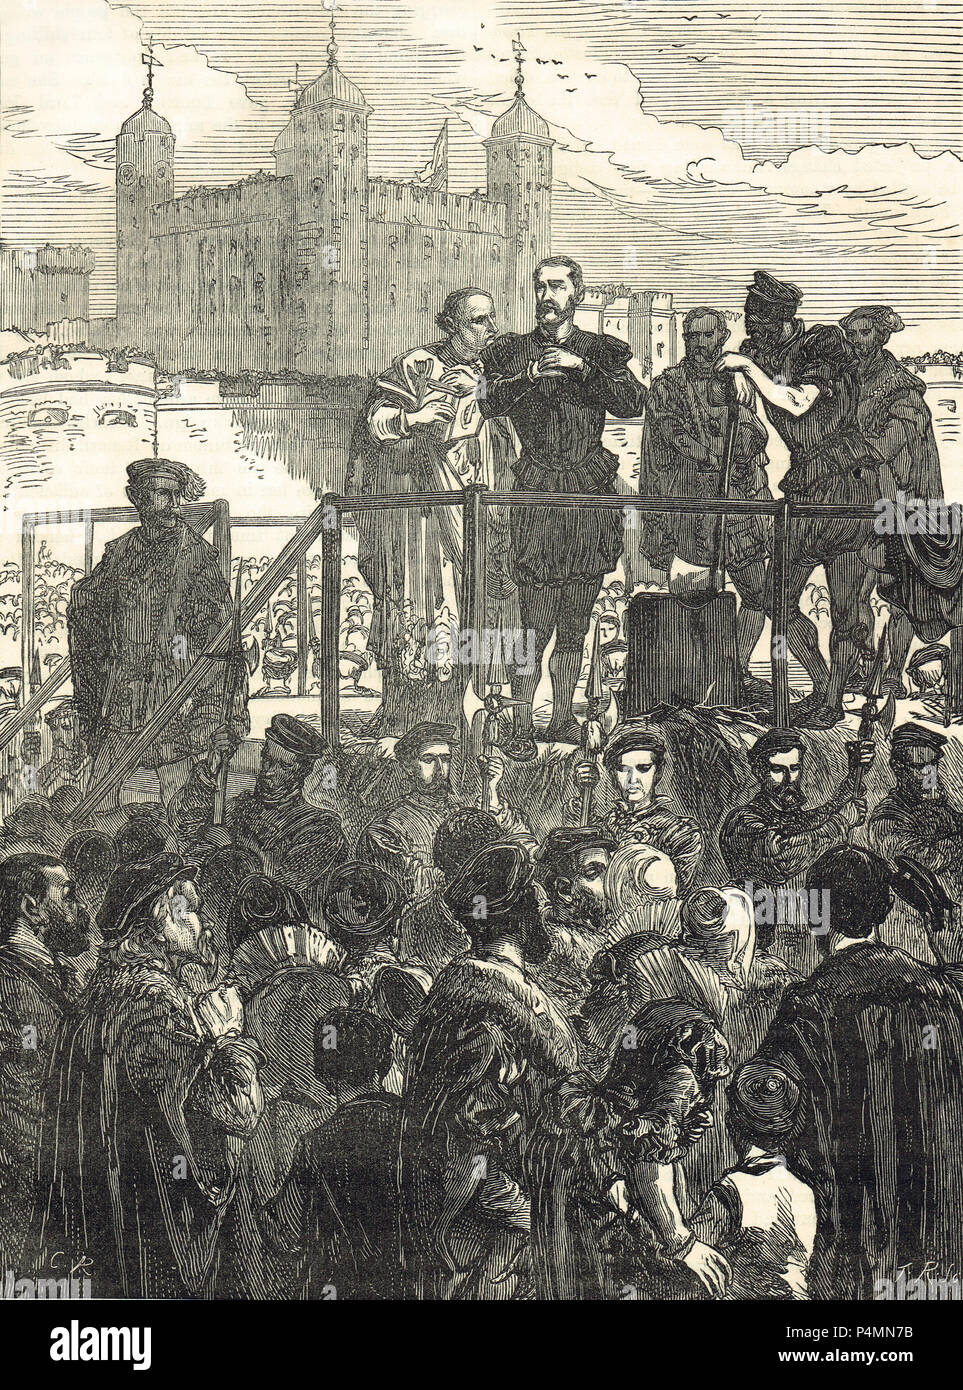 Esecuzione di John Dudley, primo duca di Northumberland, 22 agosto 1553, decapitato a Tower Hill, Londra, dopo aver invano tentato di installare Lady Jane grigio come Regina Foto Stock